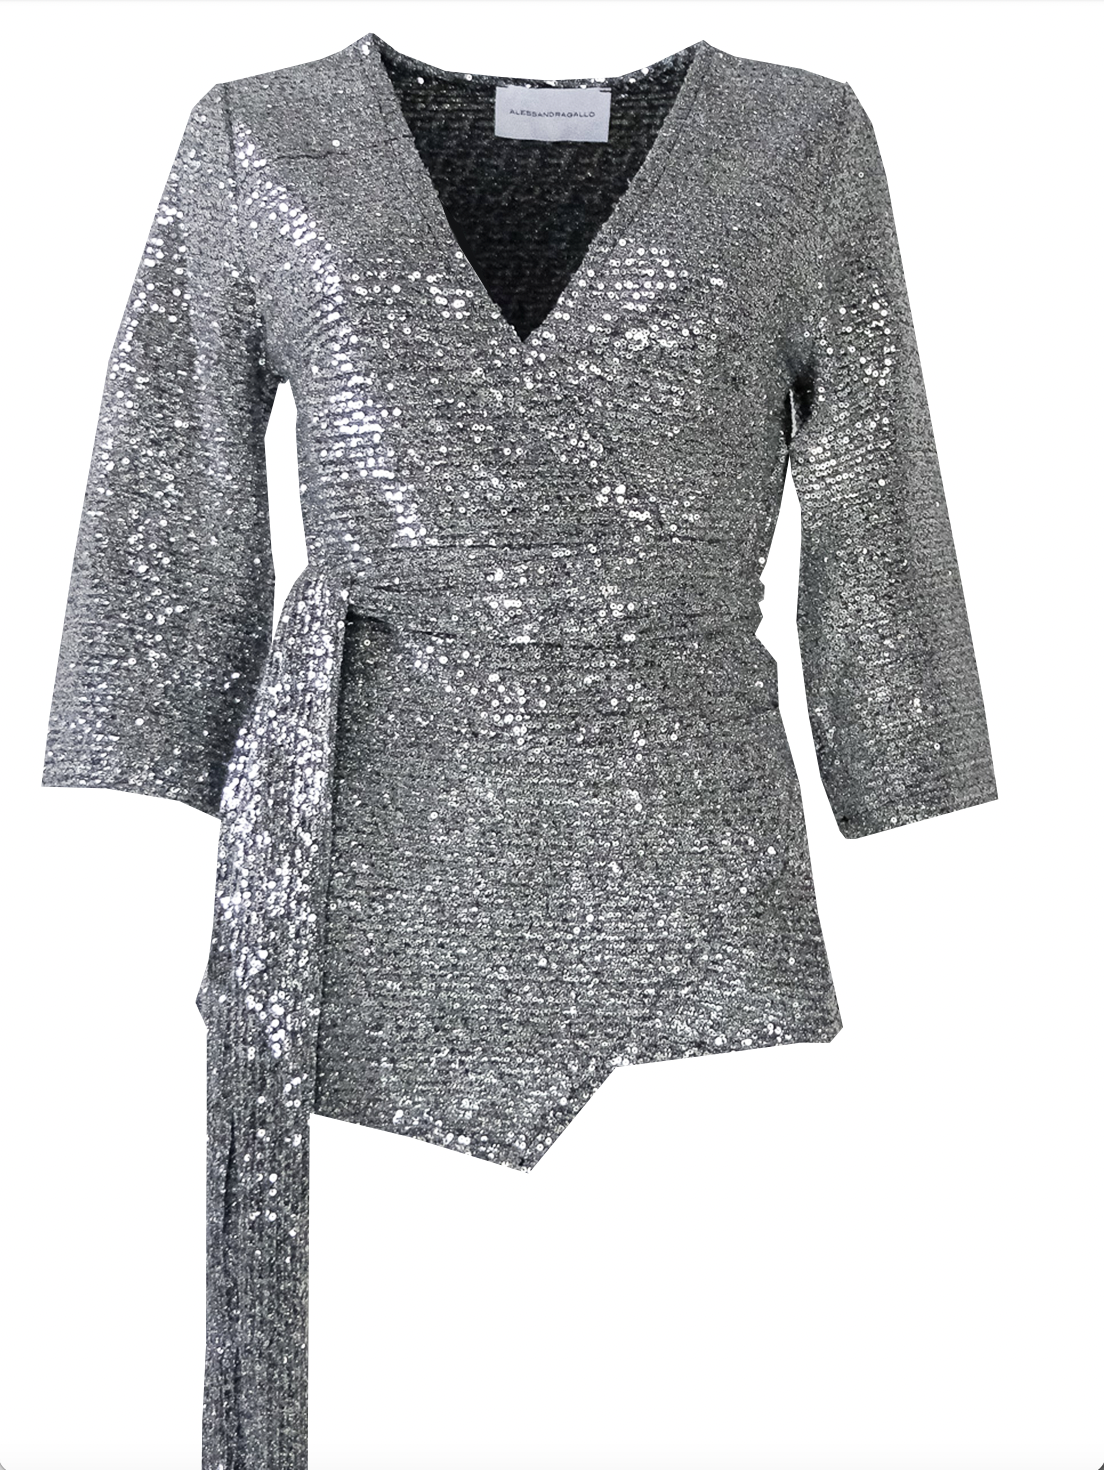 LEONORE - silver sequined kimono blouse